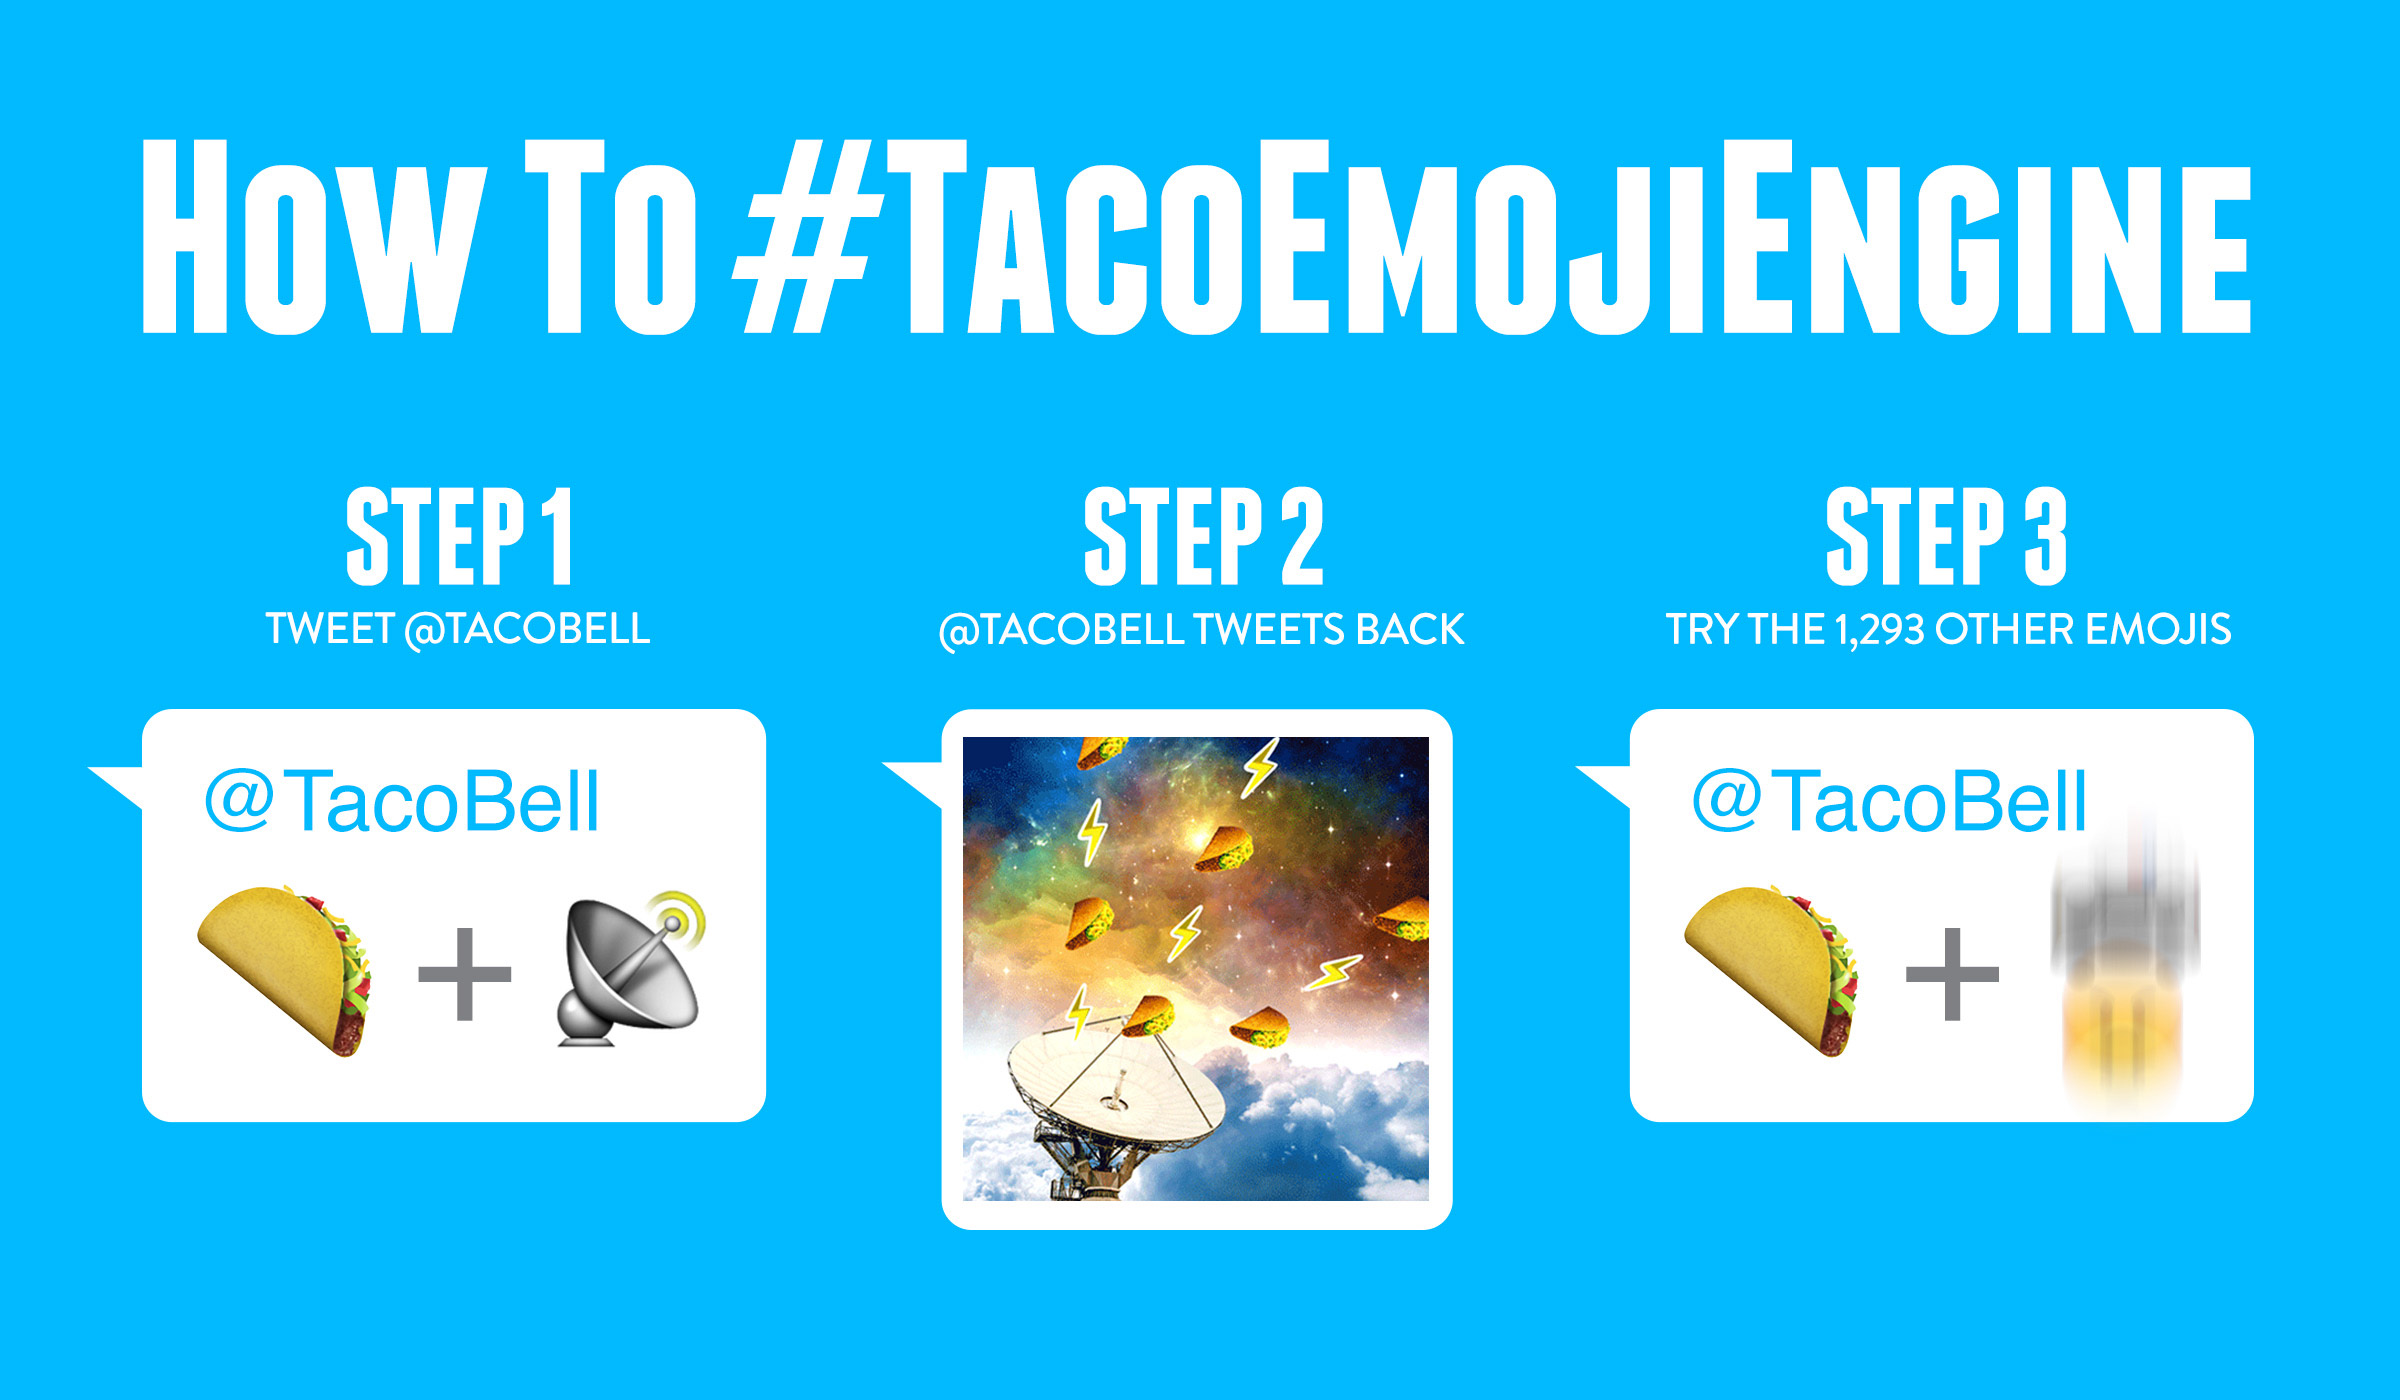 Taco Emoji Engine